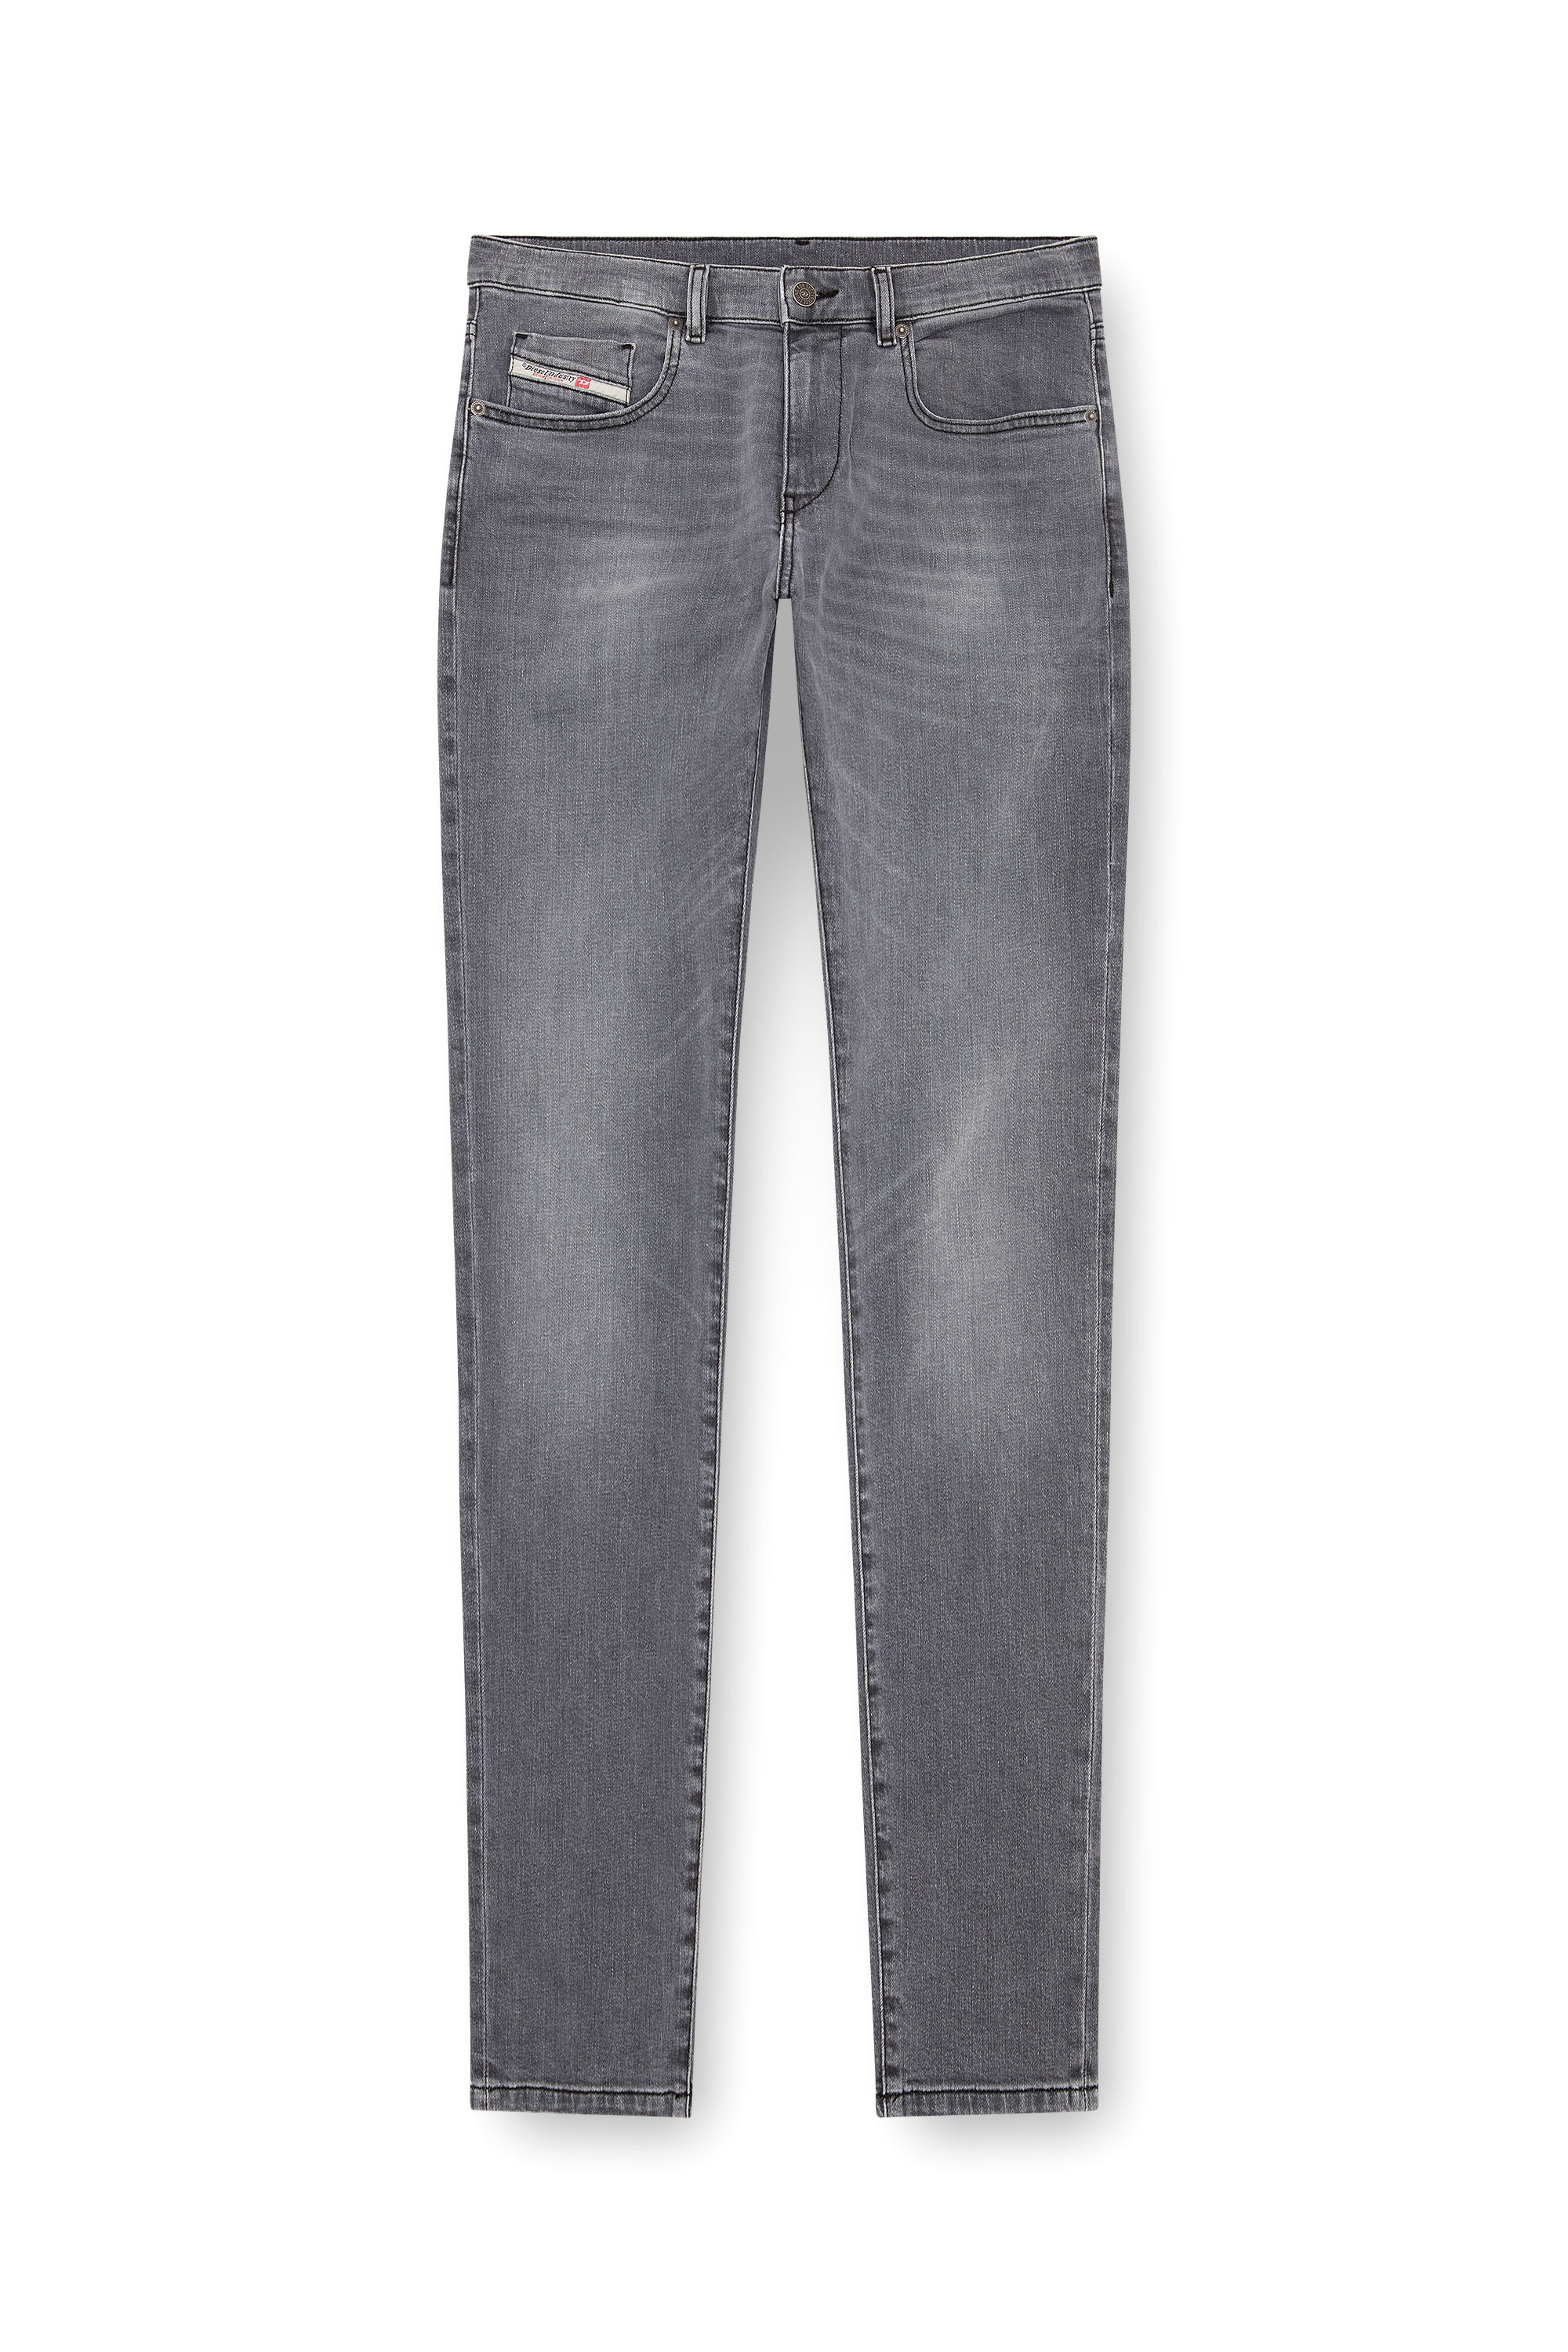 Diesel - Slim Jeans 2019 D-Strukt 0GRDK, Hombre Slim Jeans - 2019 D-Strukt in Gris - Image 3